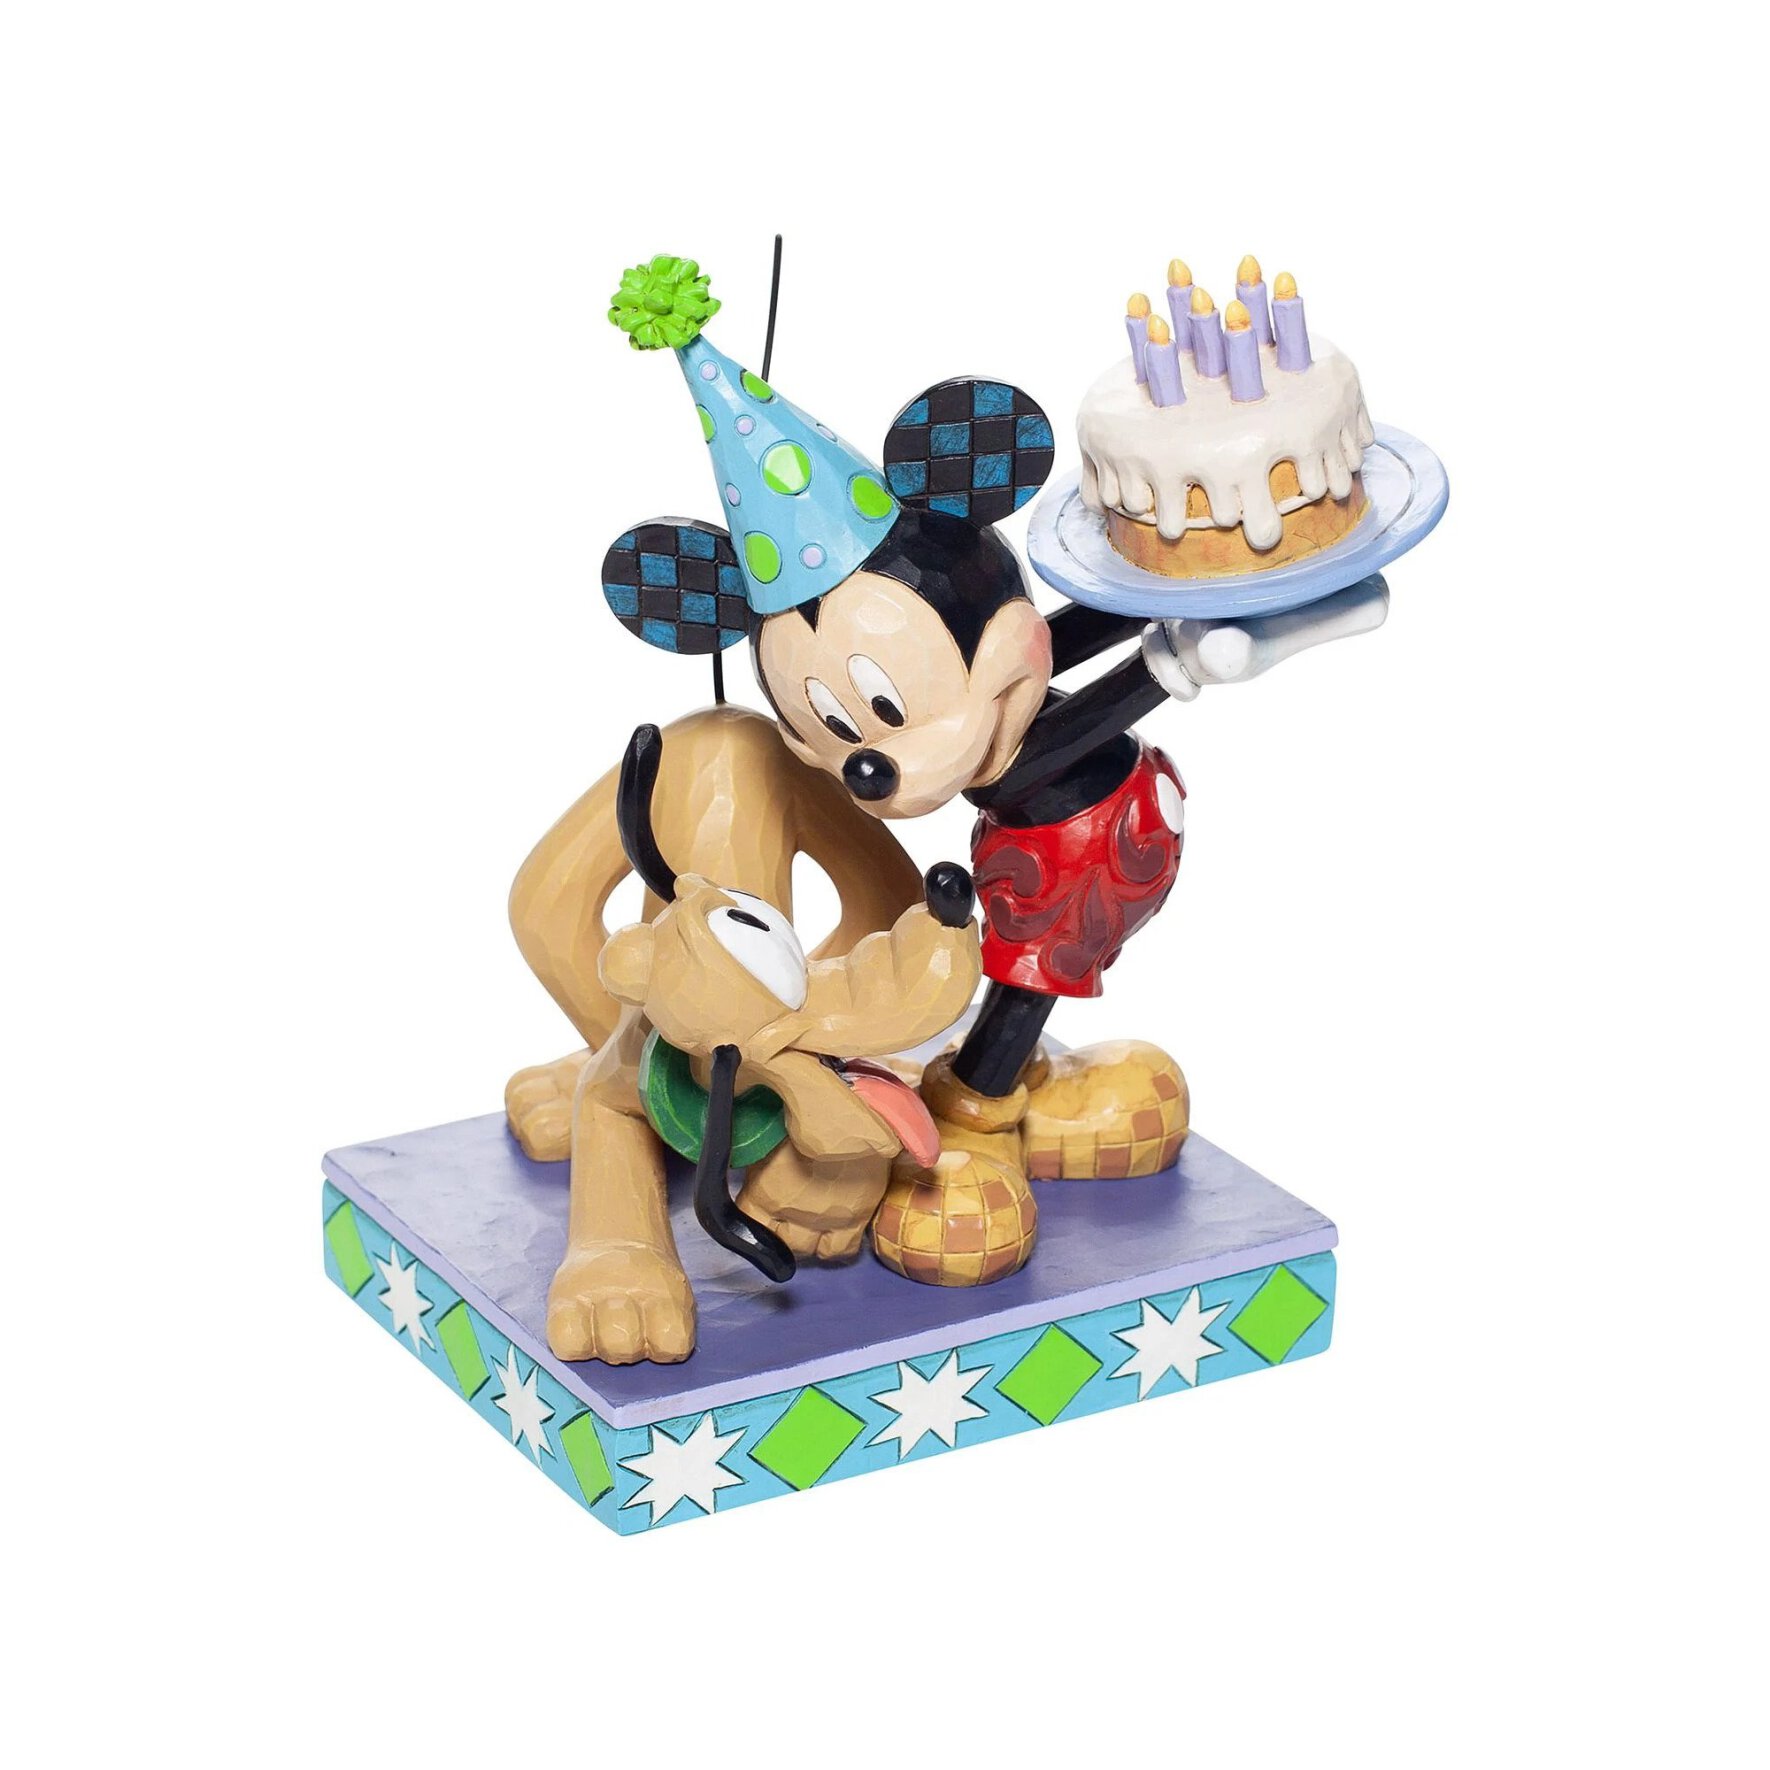  مجسمه دیزنی میکی موس Mickey Mouse and Pluto 